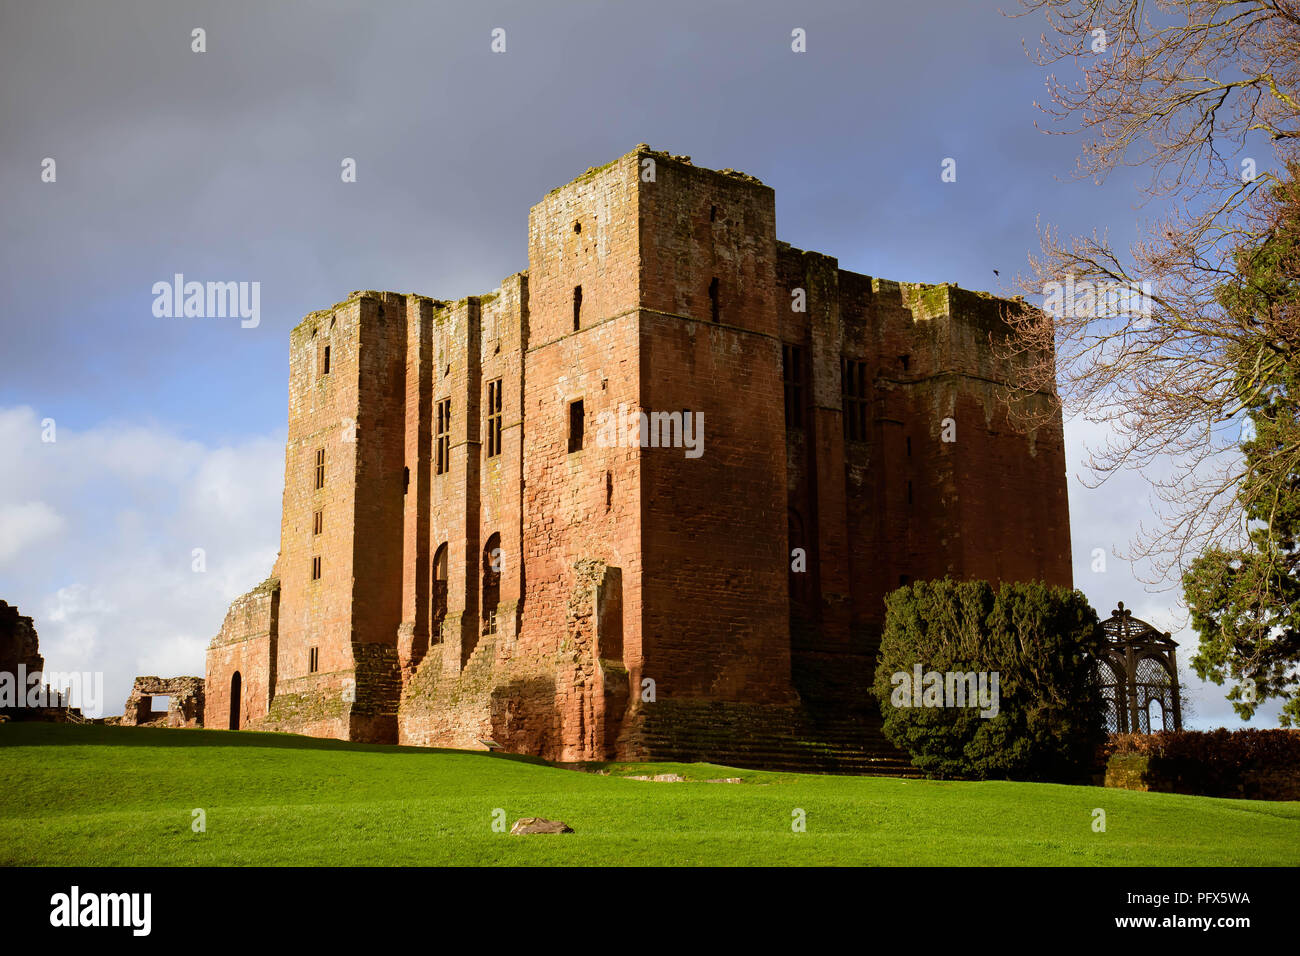 Febrero 2016 - ruinas de El Castillo de Kenilworth, UK; desempeñó un importante papel histórico y fue el tema del asedio más largo de la historia inglesa Foto de stock